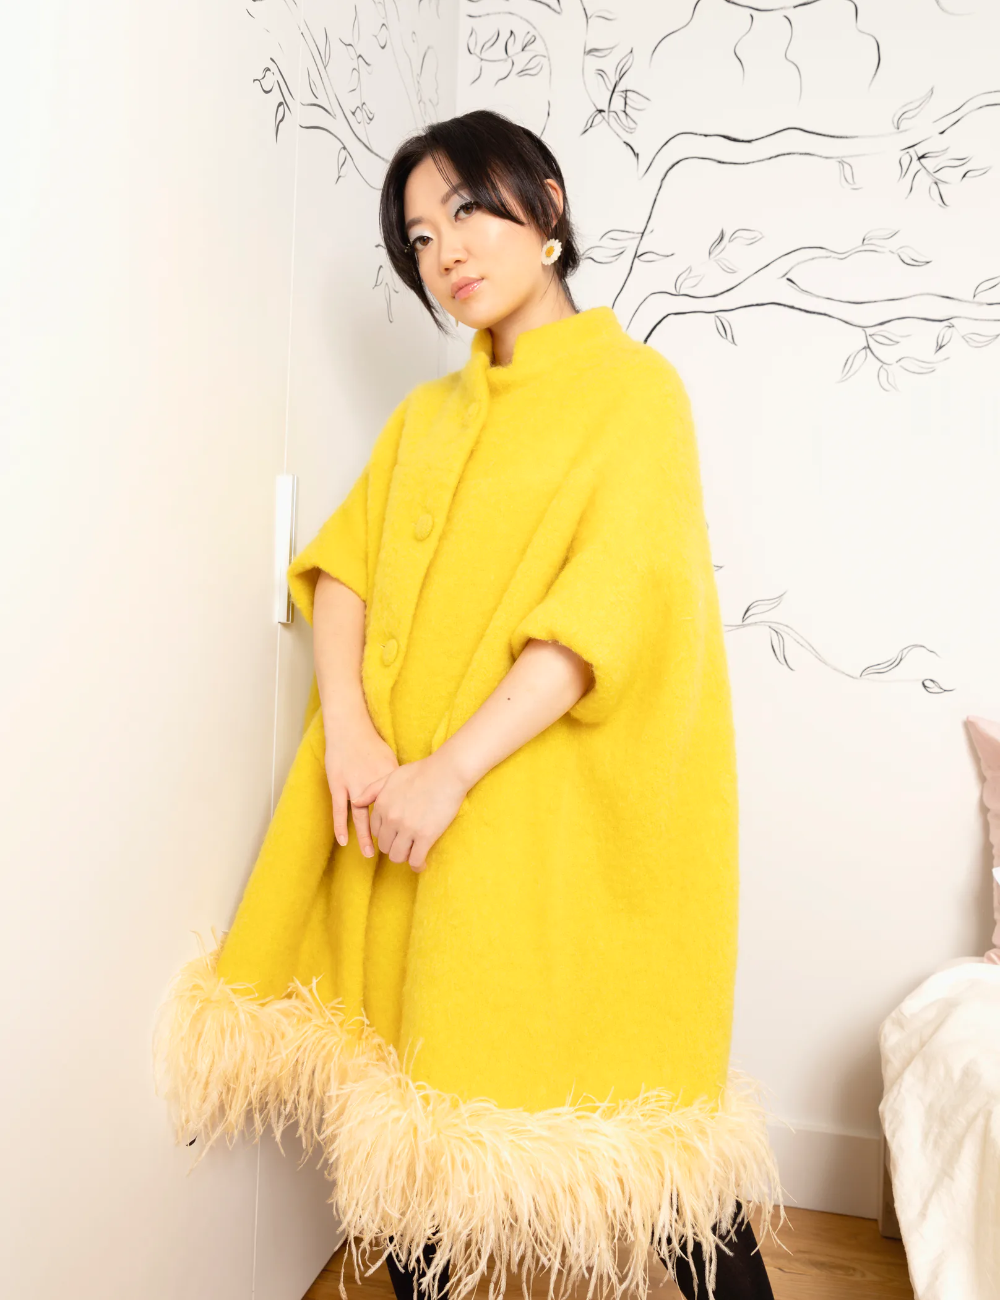 Nhà thiết kế thời trang người Mỹ gốc Á Olivia Cheng